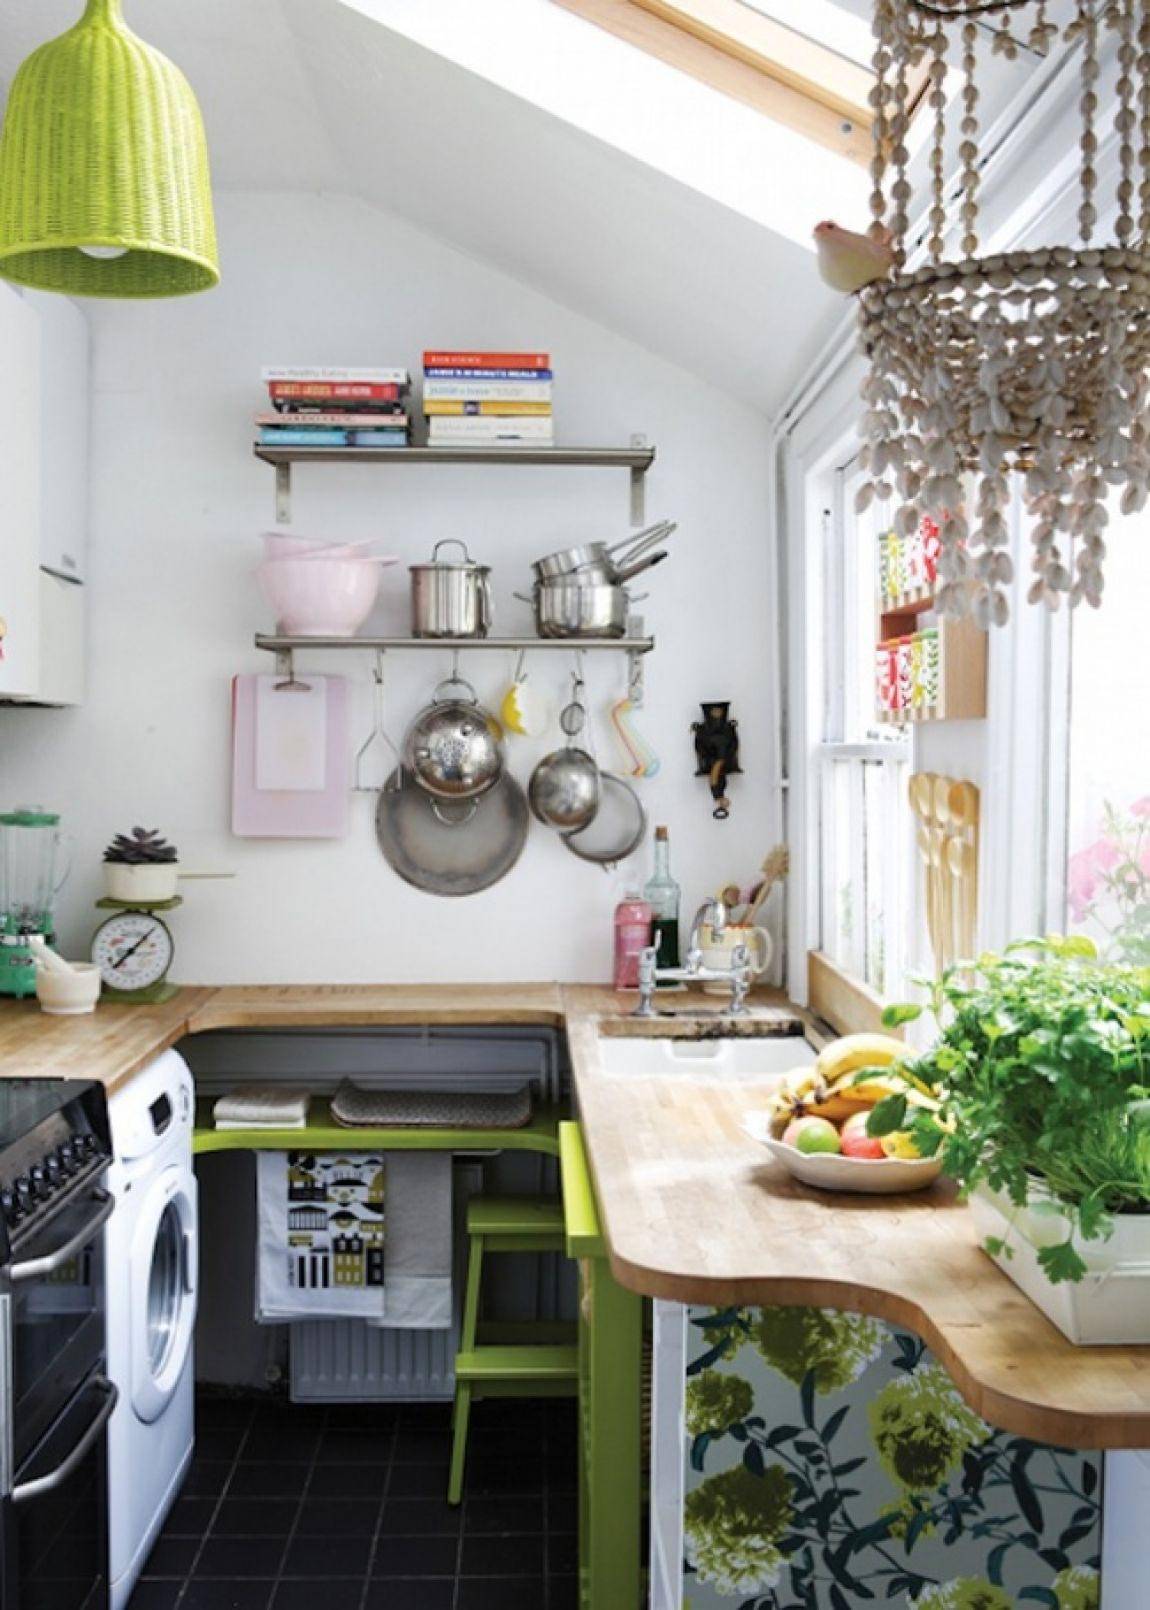 Как сделать кухню просторнее: советы дизайнеров, фото в интерьере